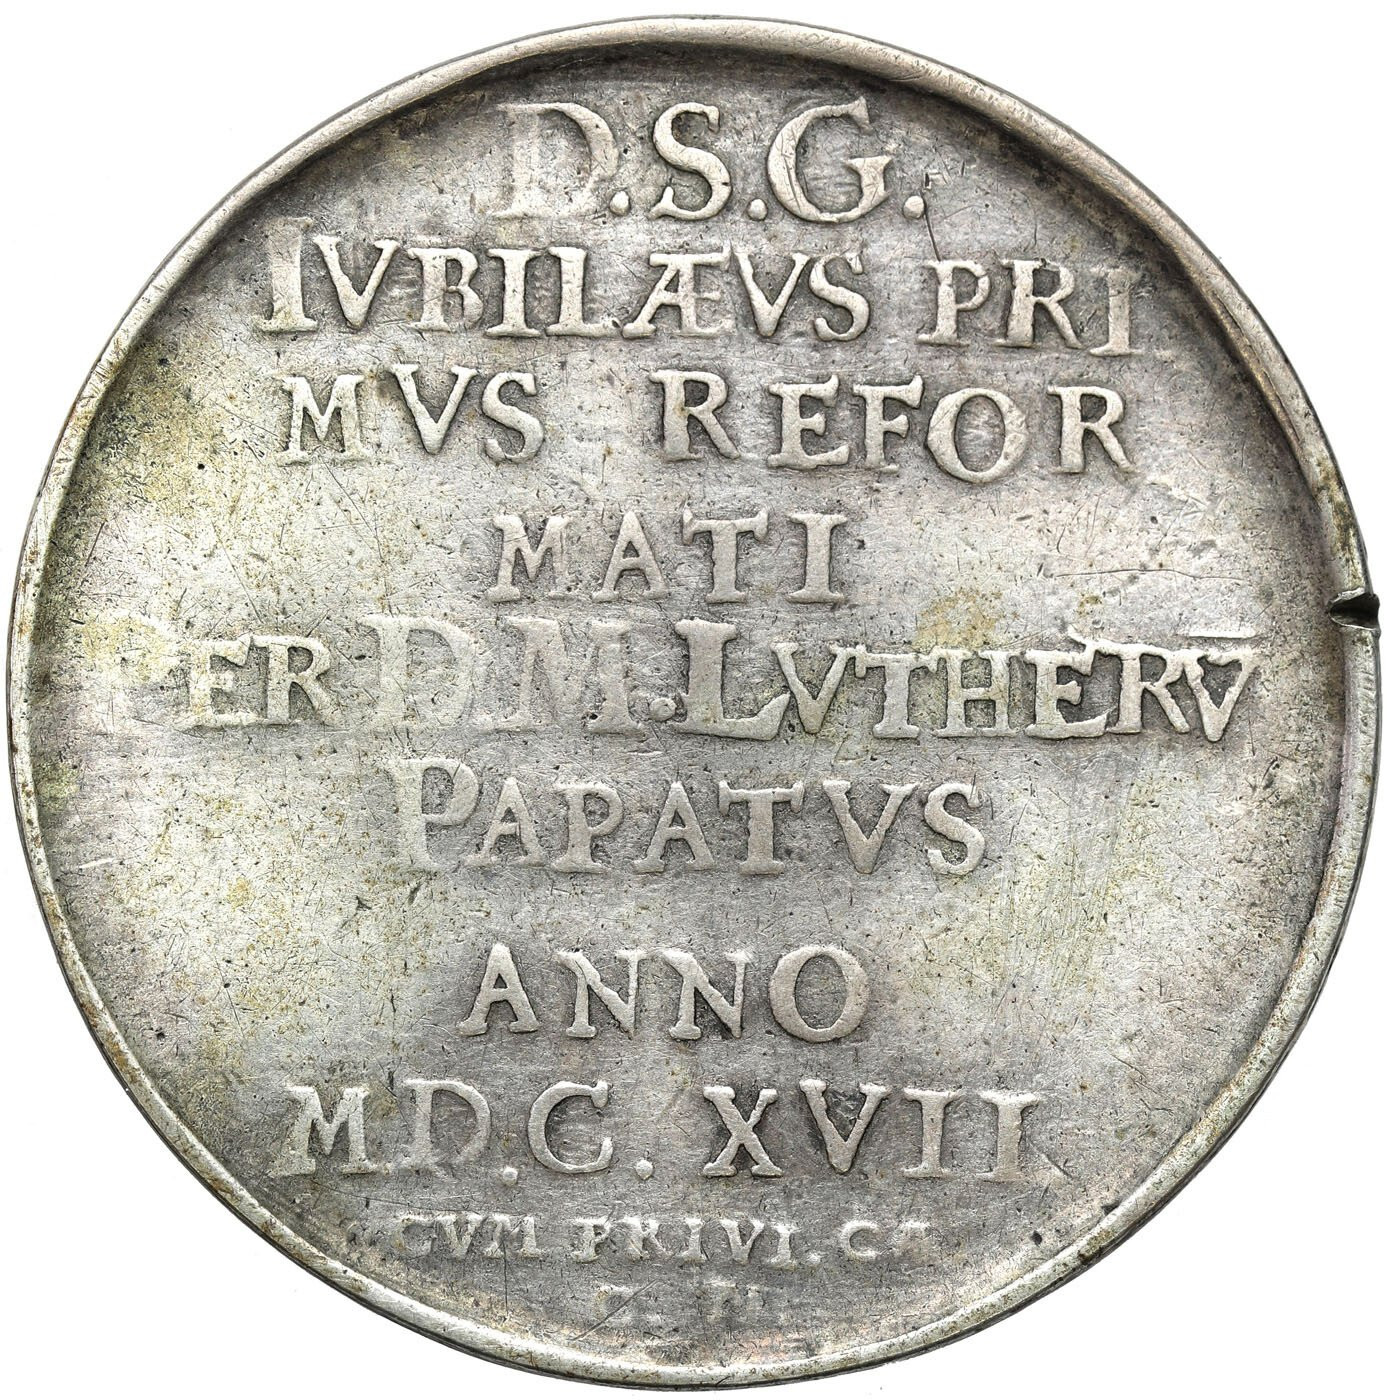 Niemcy, Saksonia. Medal na Stulecie Reformacji 1617